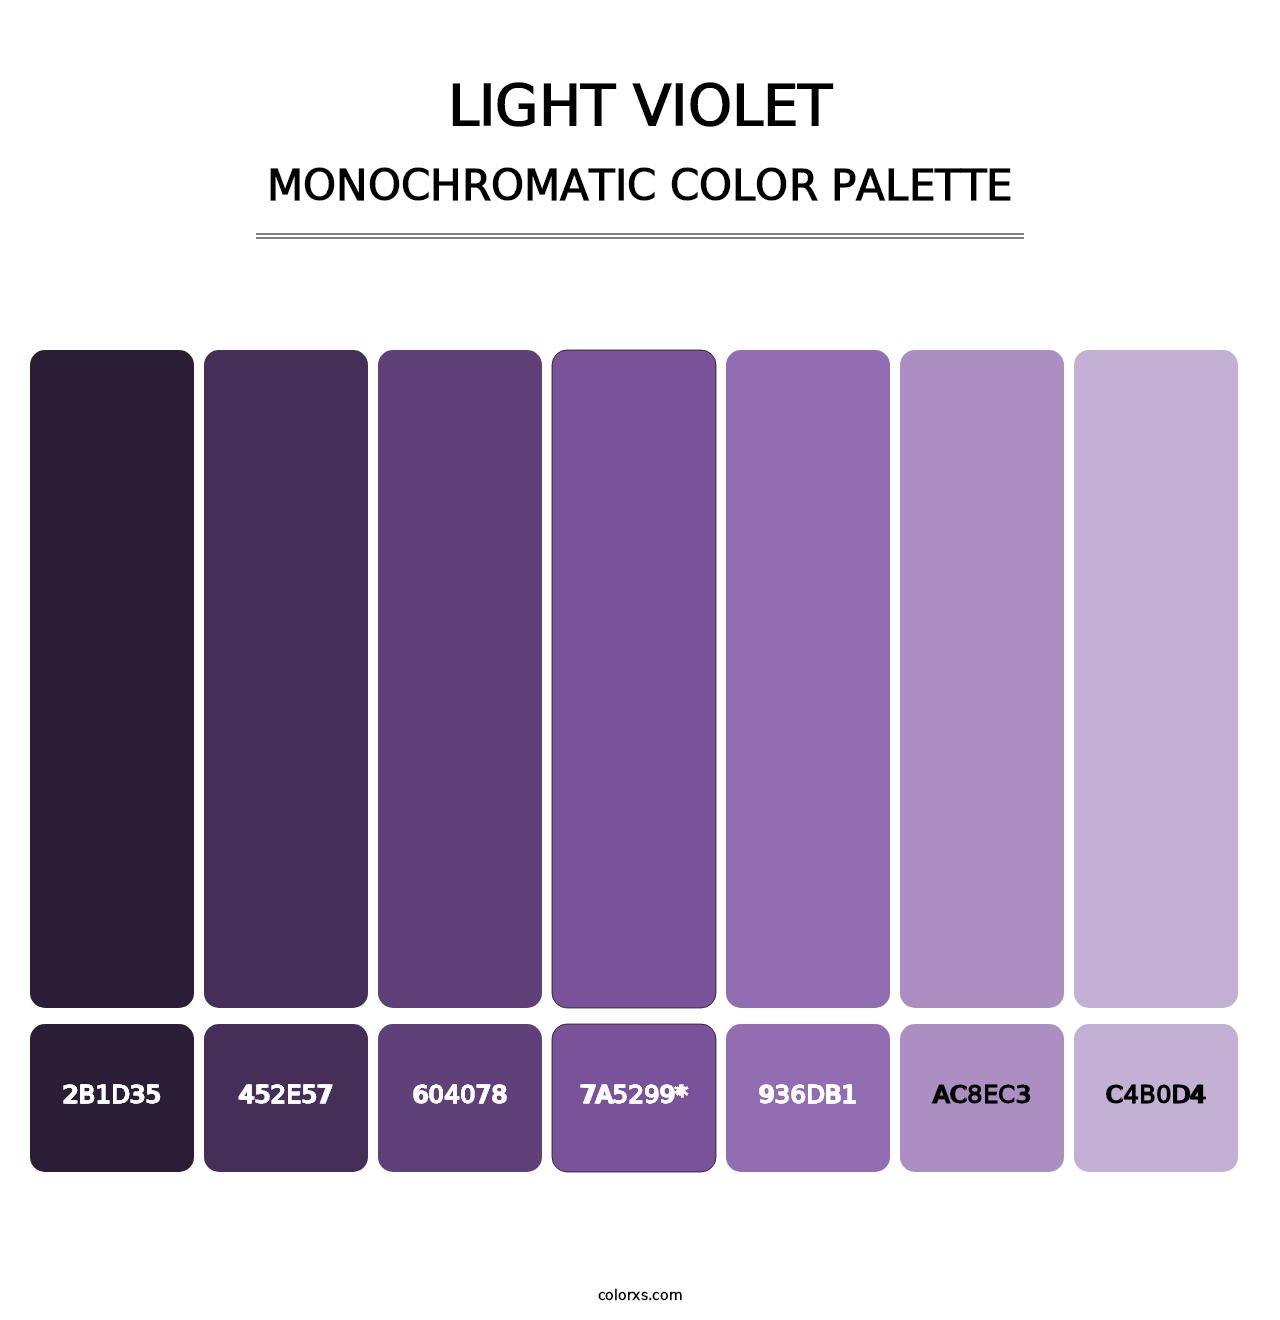 Light Violet - Monochromatic Color Palette